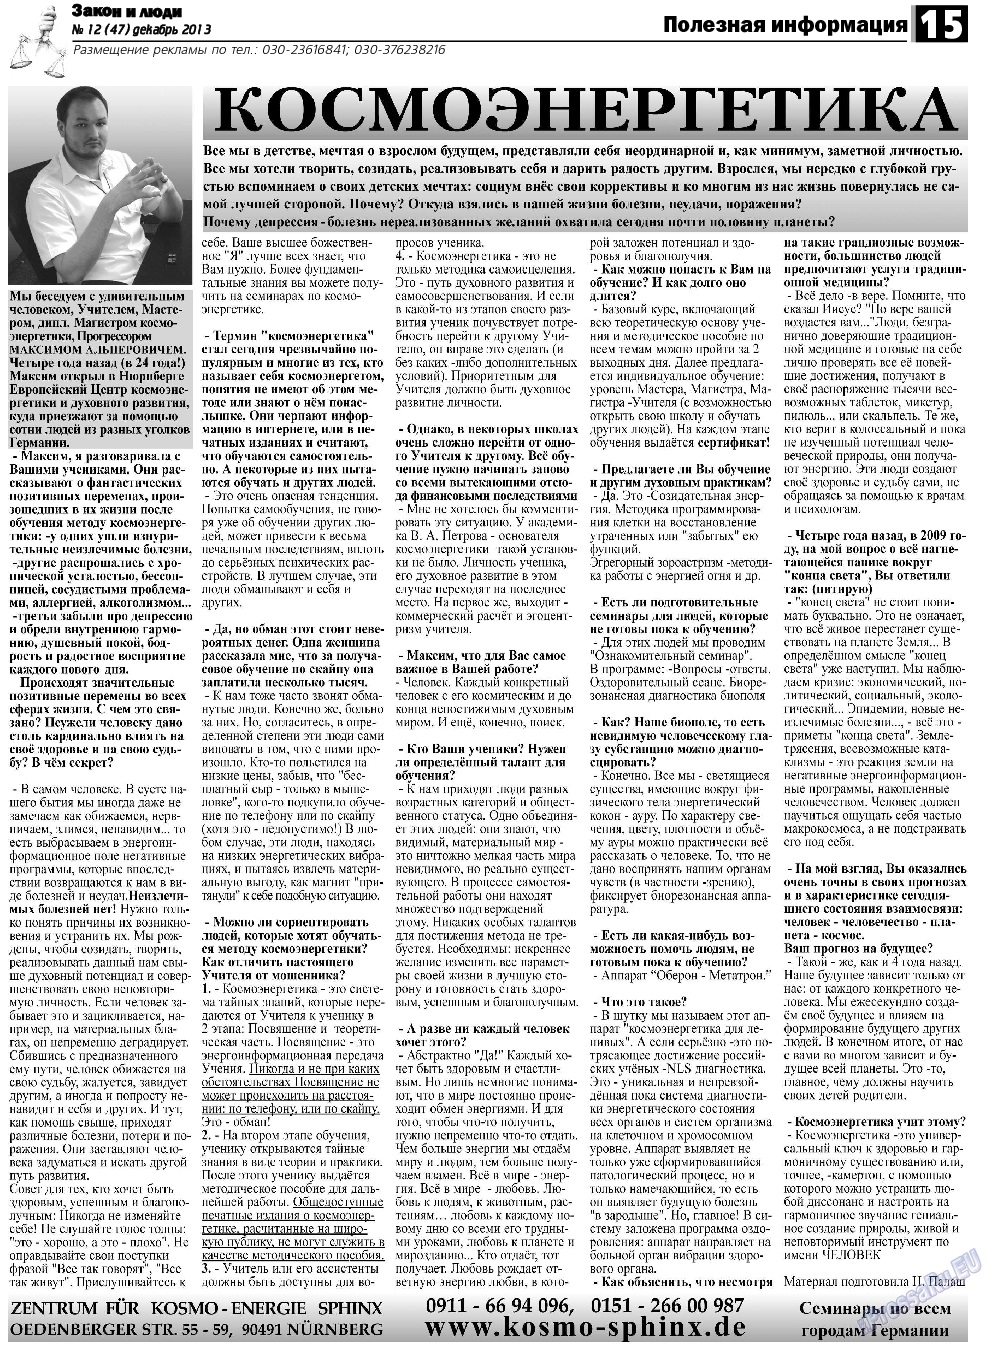 Закон и люди, газета. 2013 №12 стр.15